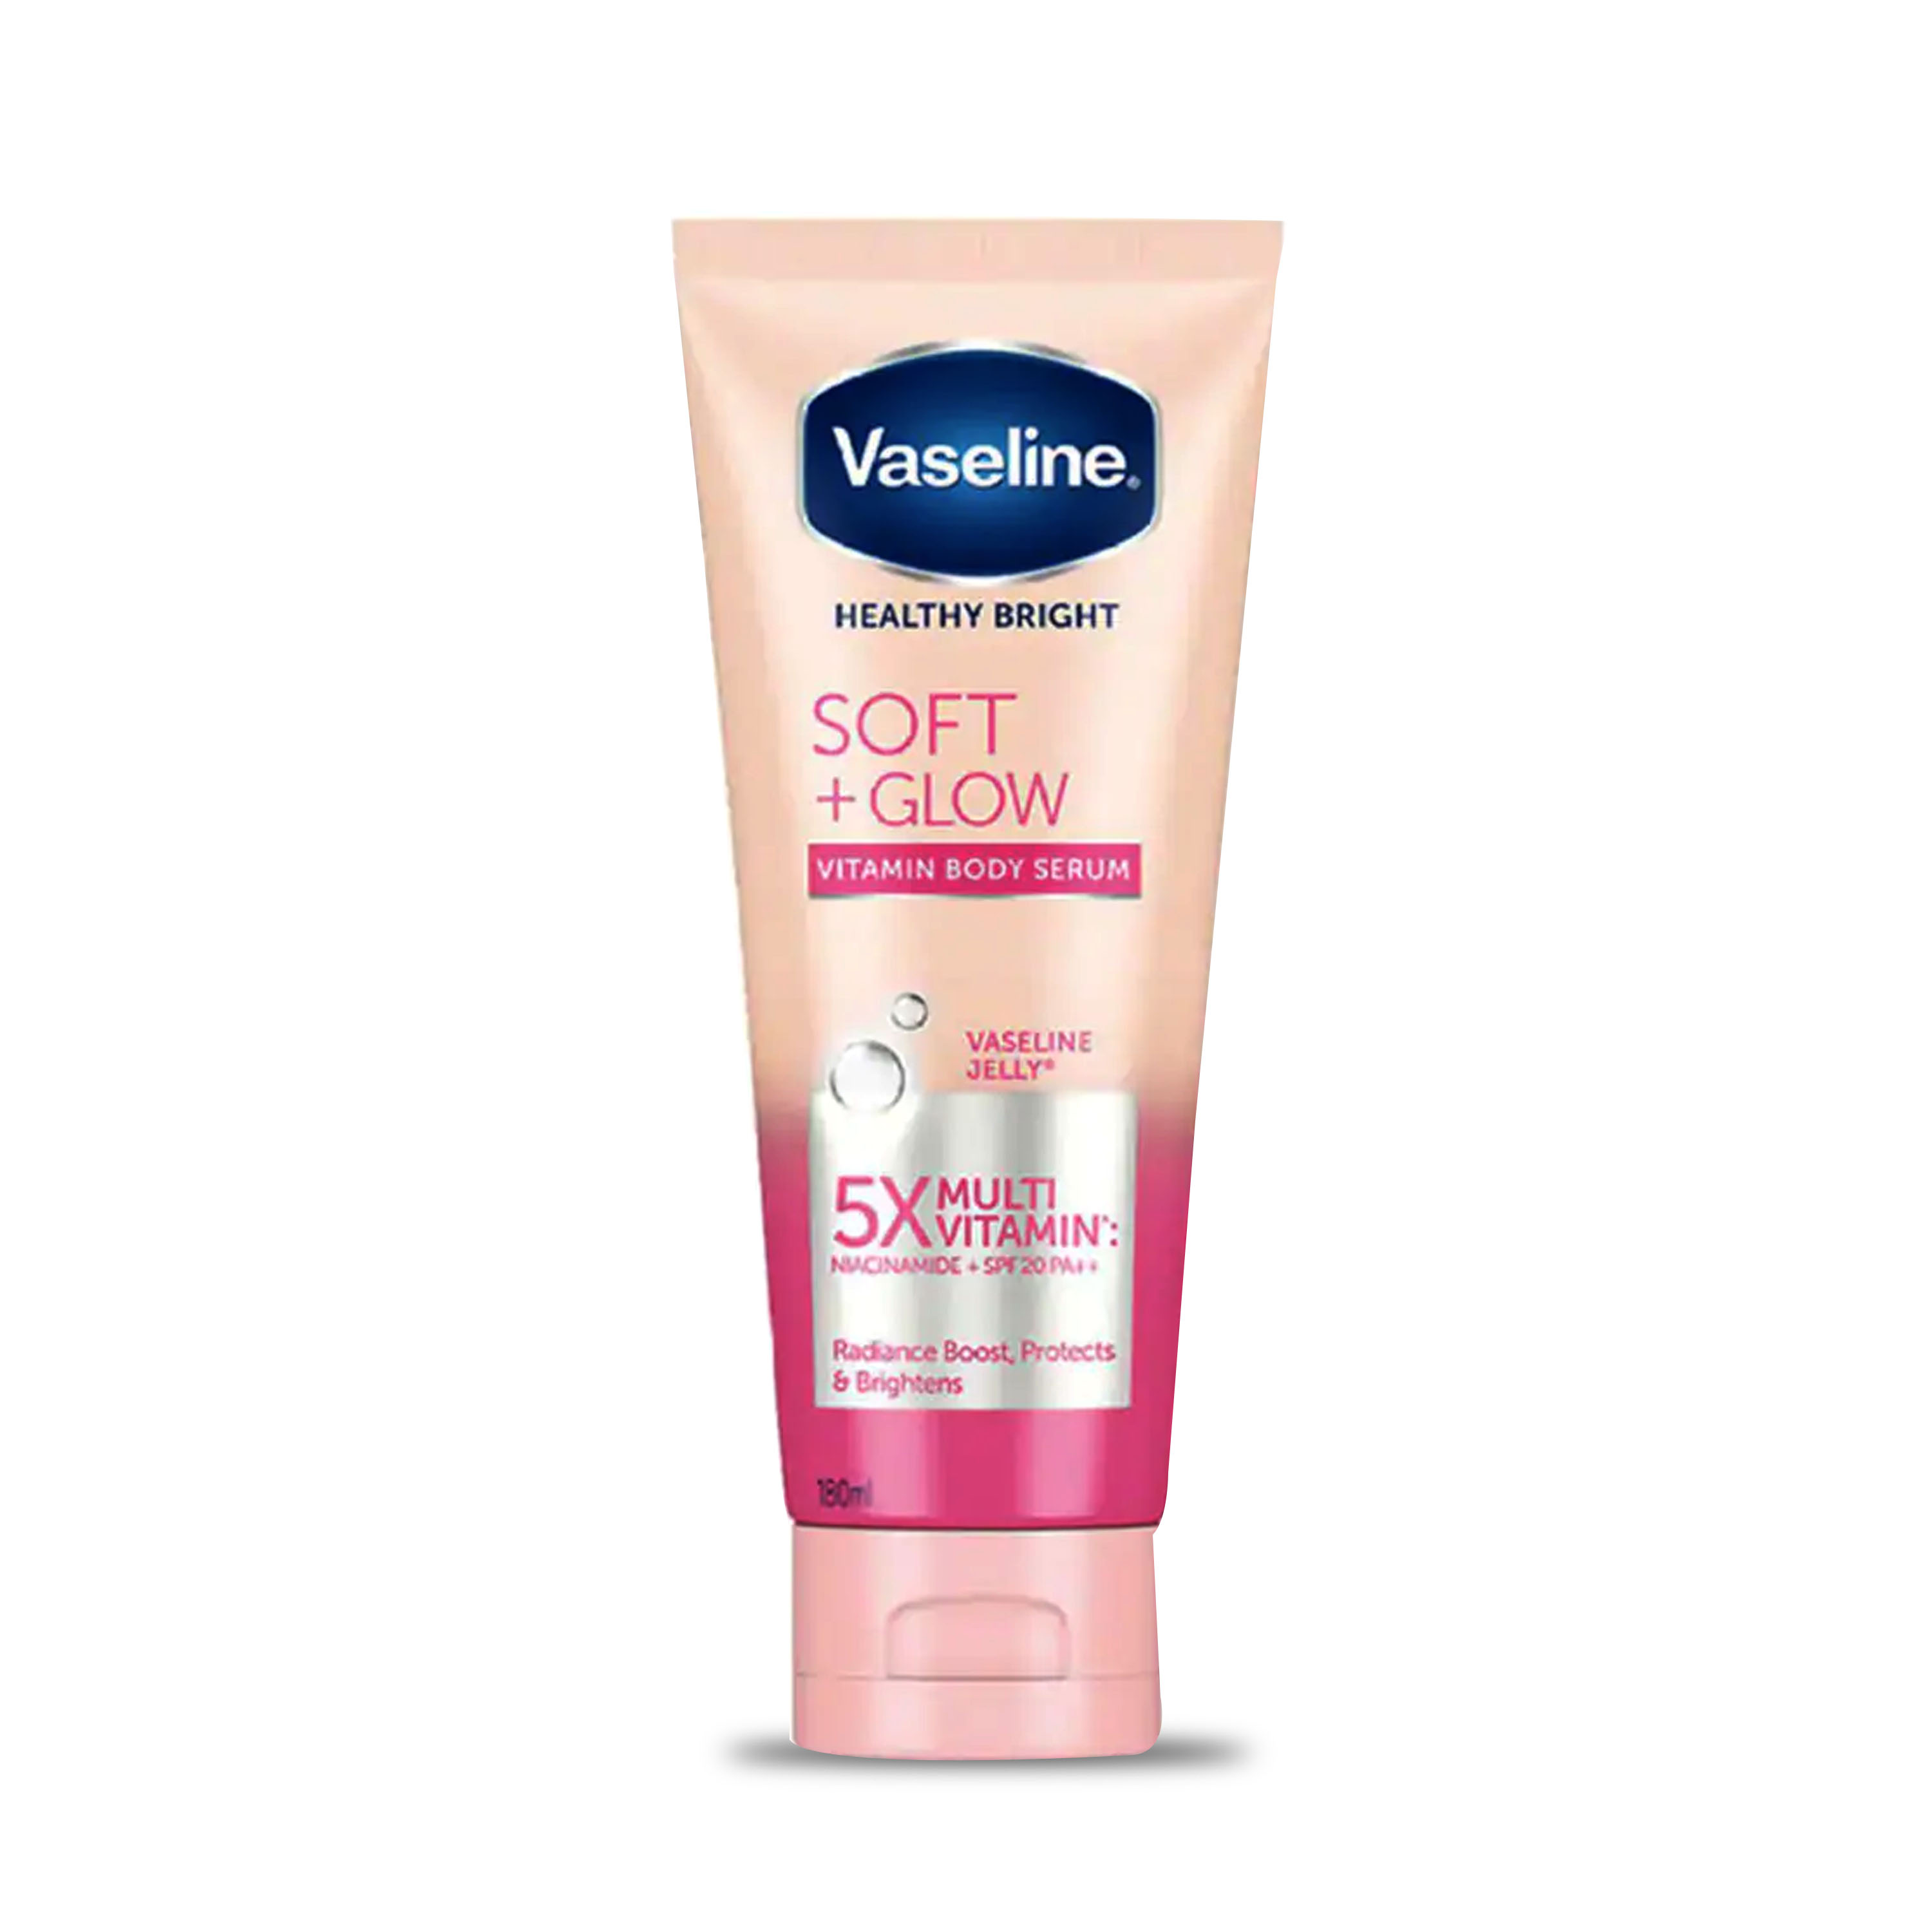 Vaseline Vitamin Body Serum SOFT Glow 180 ml / Body Lotion Vaseline Healthy Bright